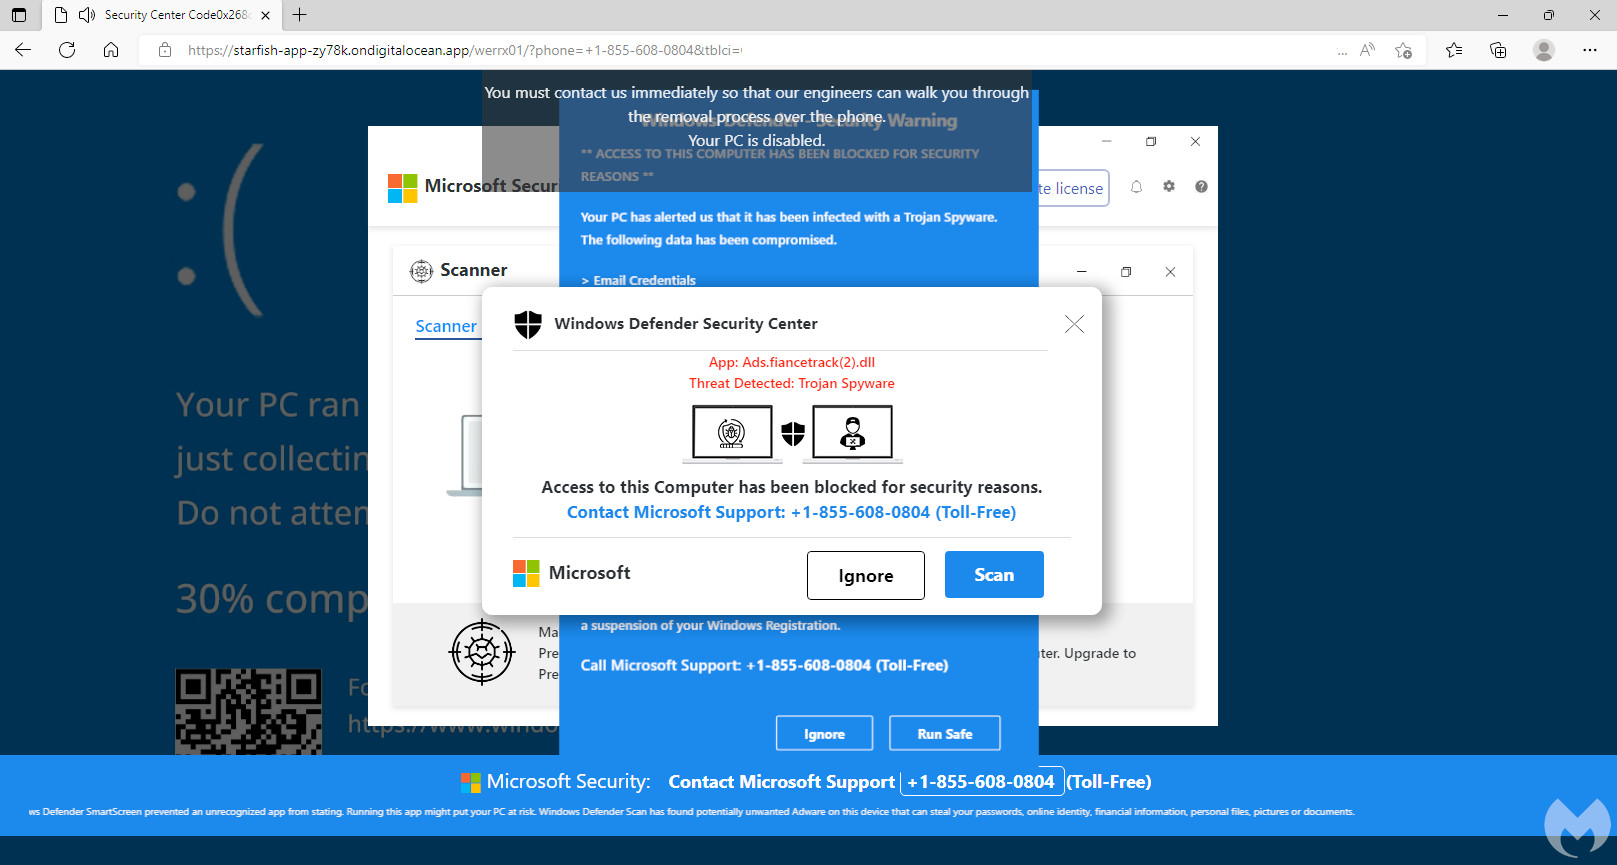 Microsoft Edge-Werbung von Tech-Support-Betrügern ausgenutzt